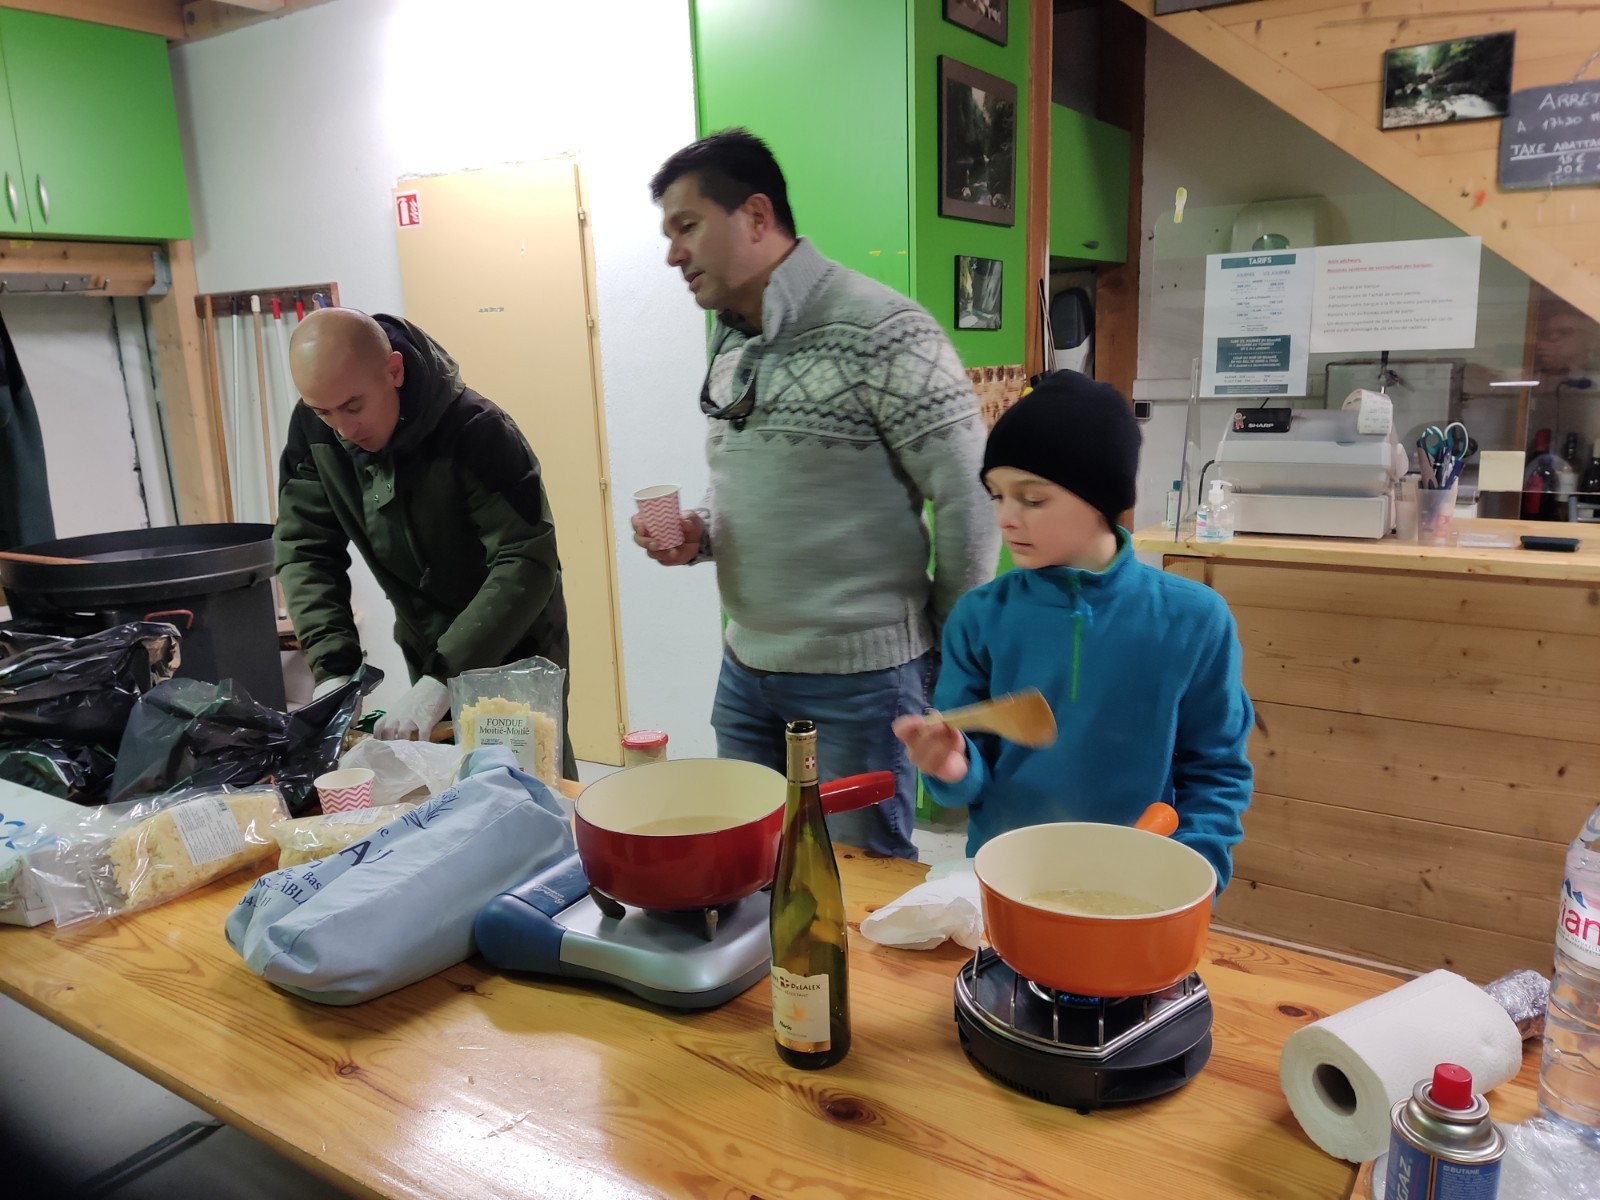 Notre chef cuisinier, Romain en pleine préparation de la fondue